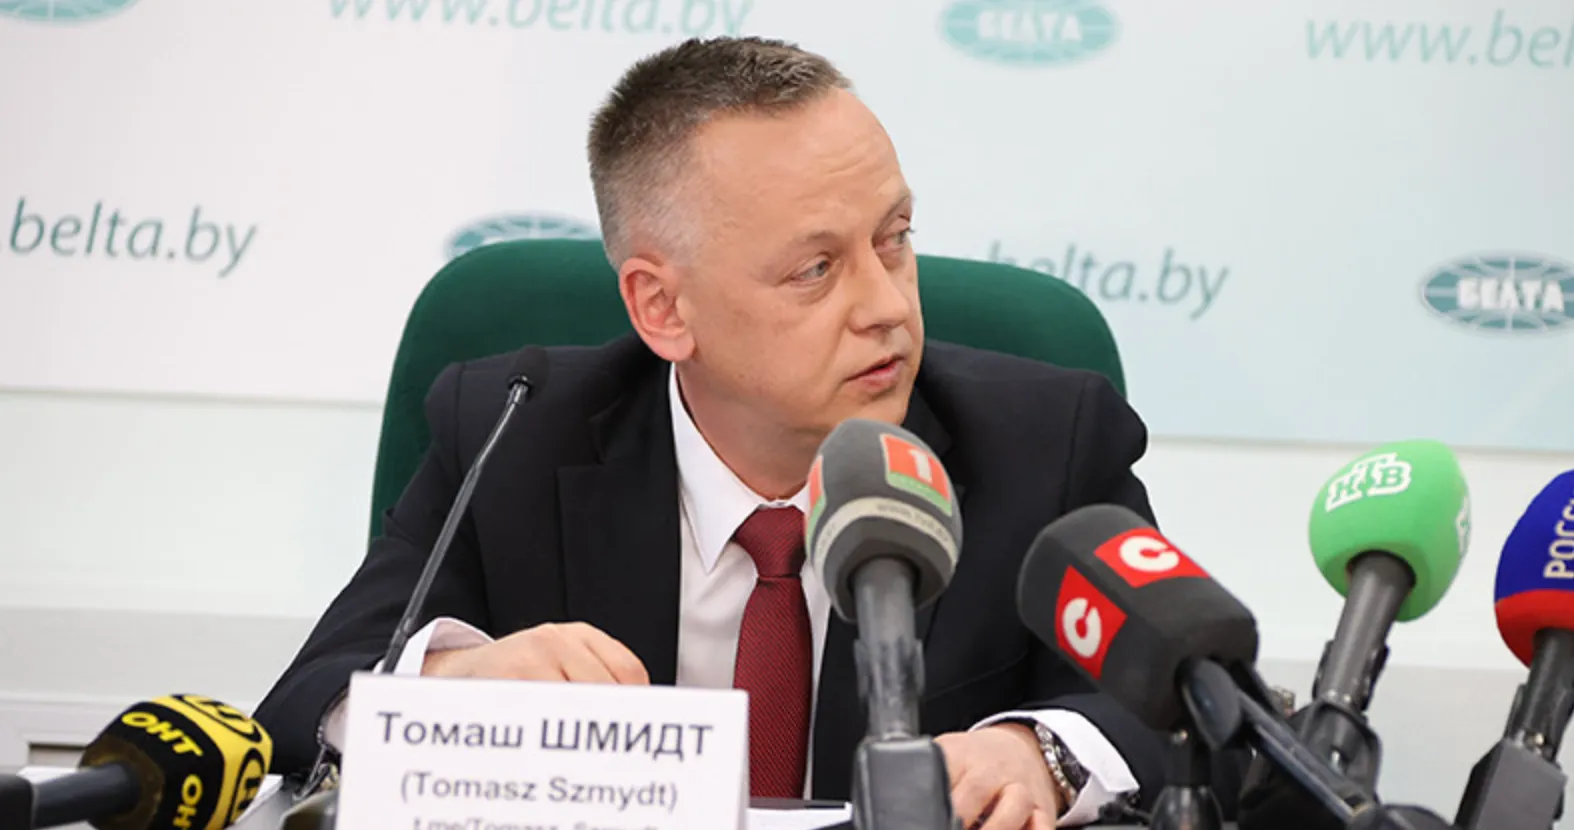 Польский судья Томаш Шмидт запросил политического убежища в Белоруссии